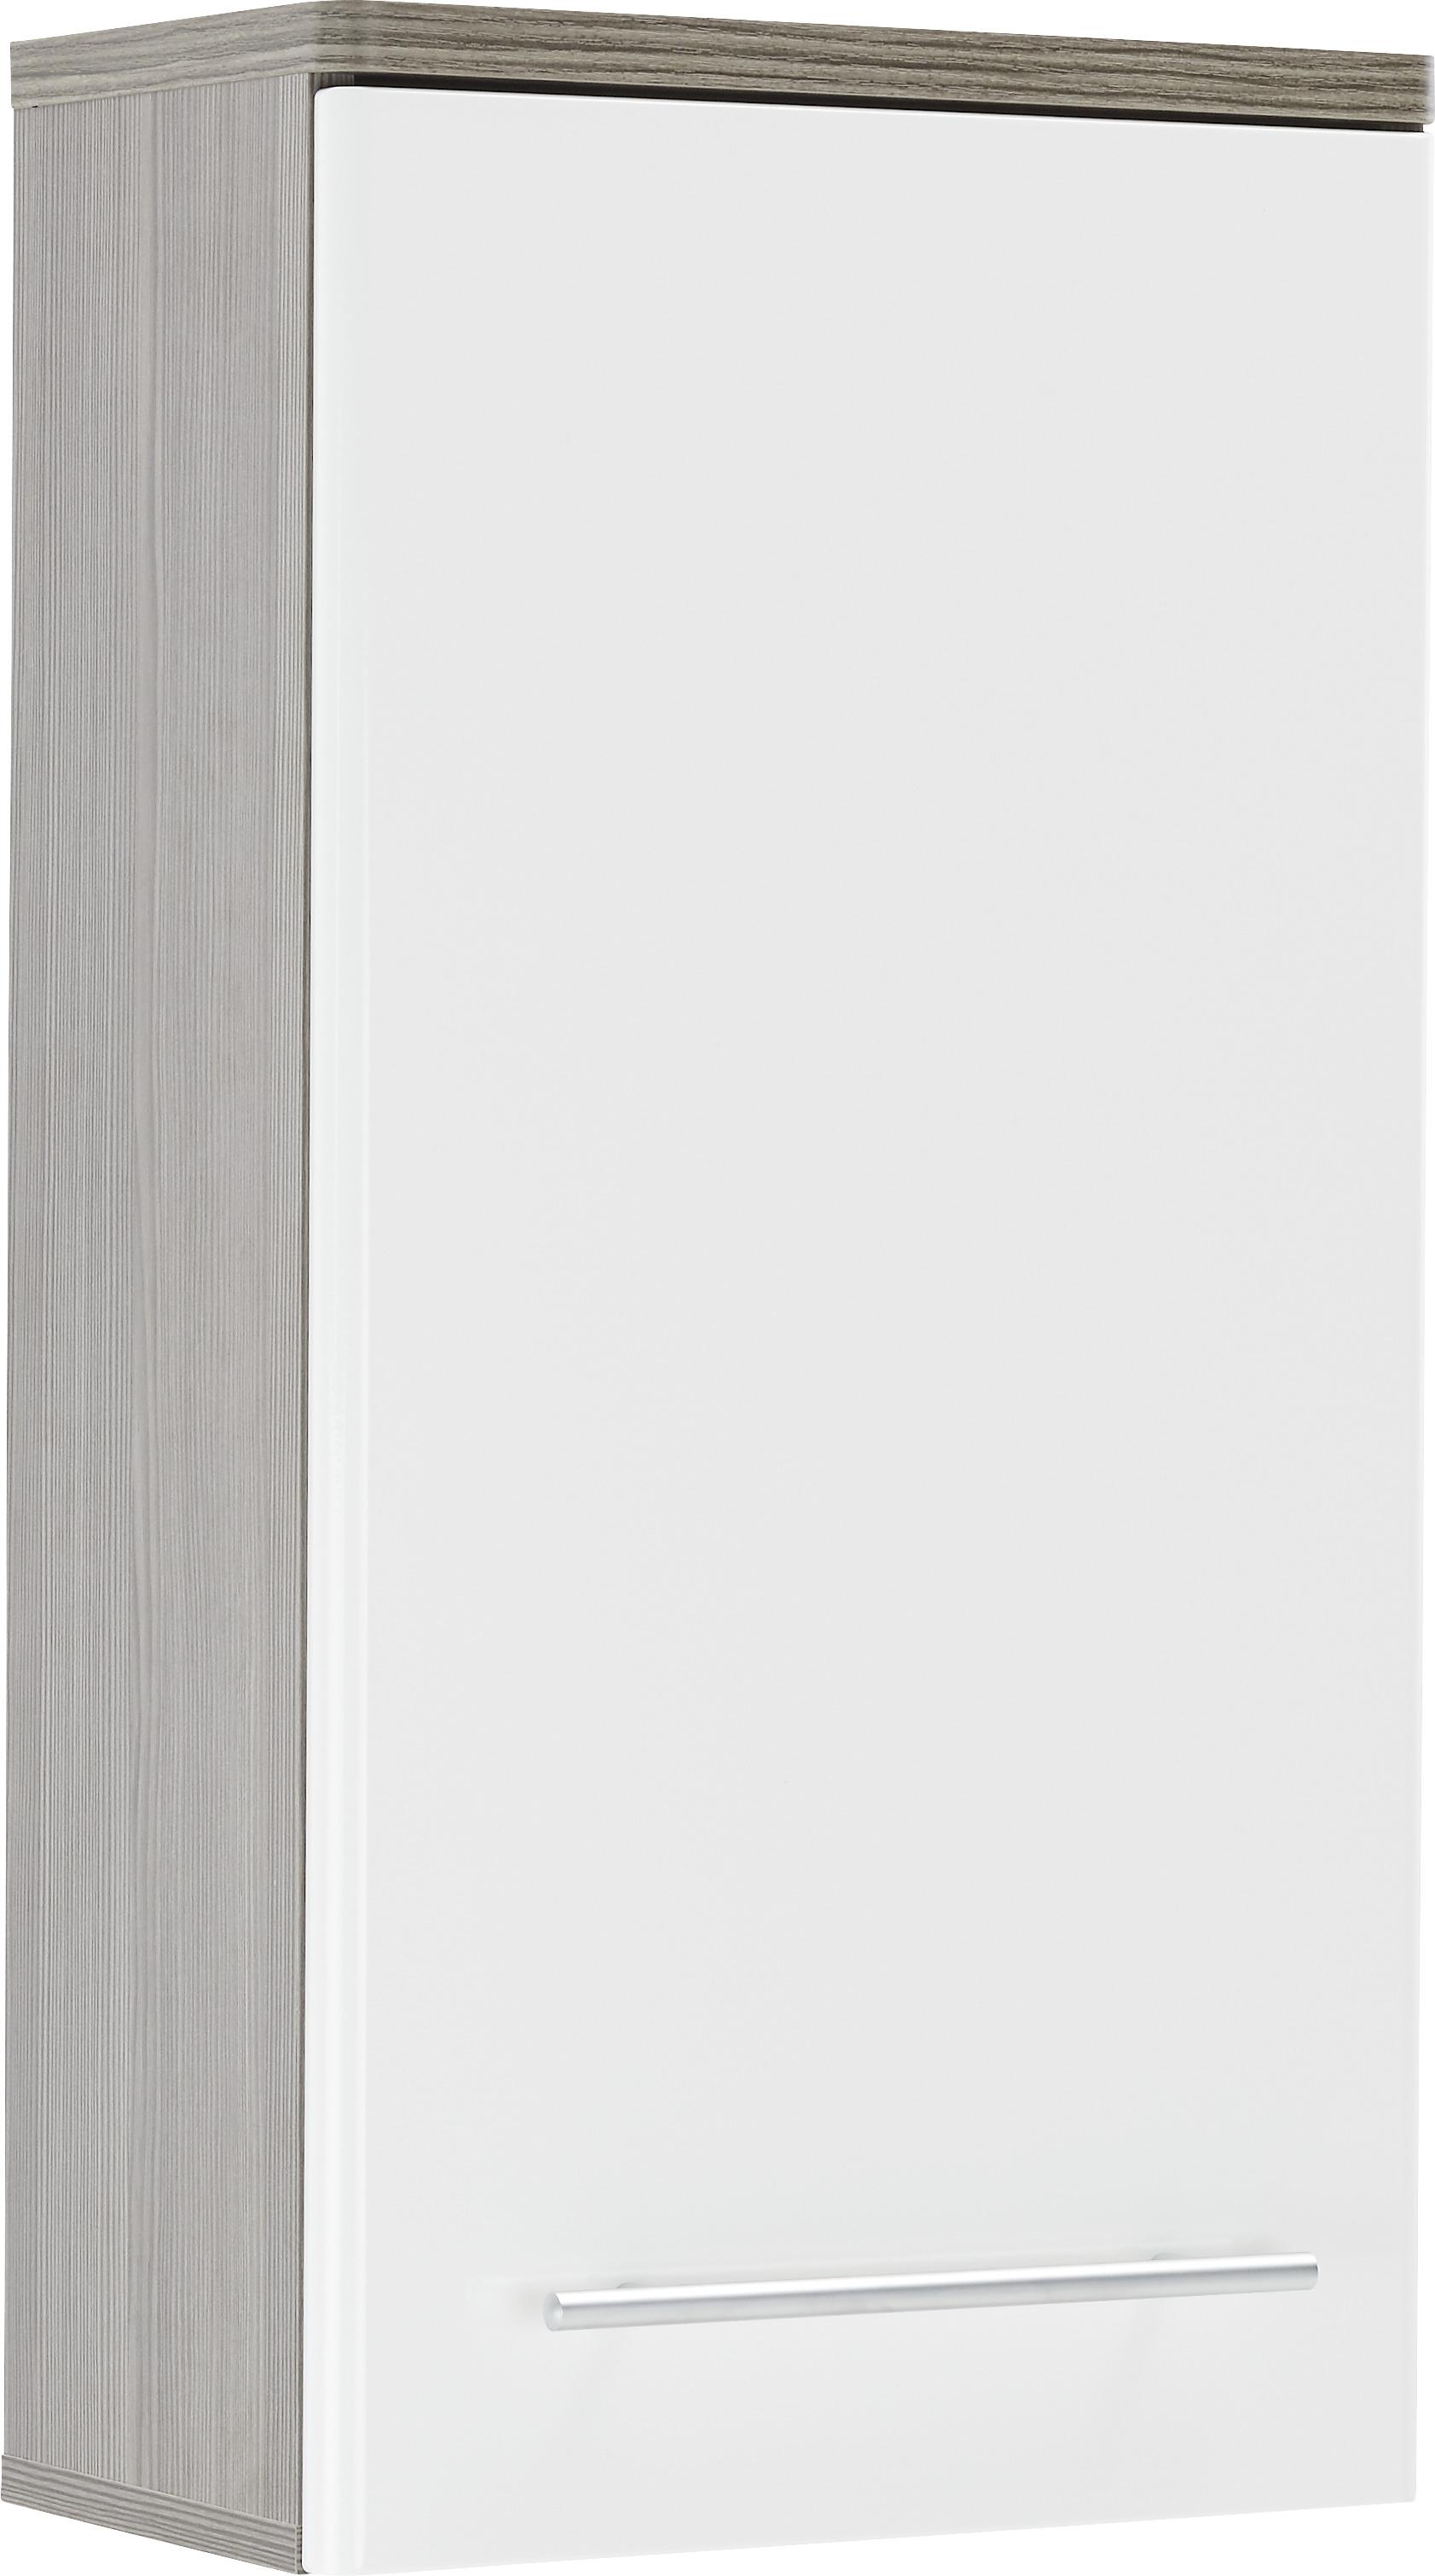 Horní Skříňka Santorin -Exklusiv- - bílá/tmavě hnědá, Konvenční, kov/kompozitní dřevo (40/78/22cm) - Modern Living